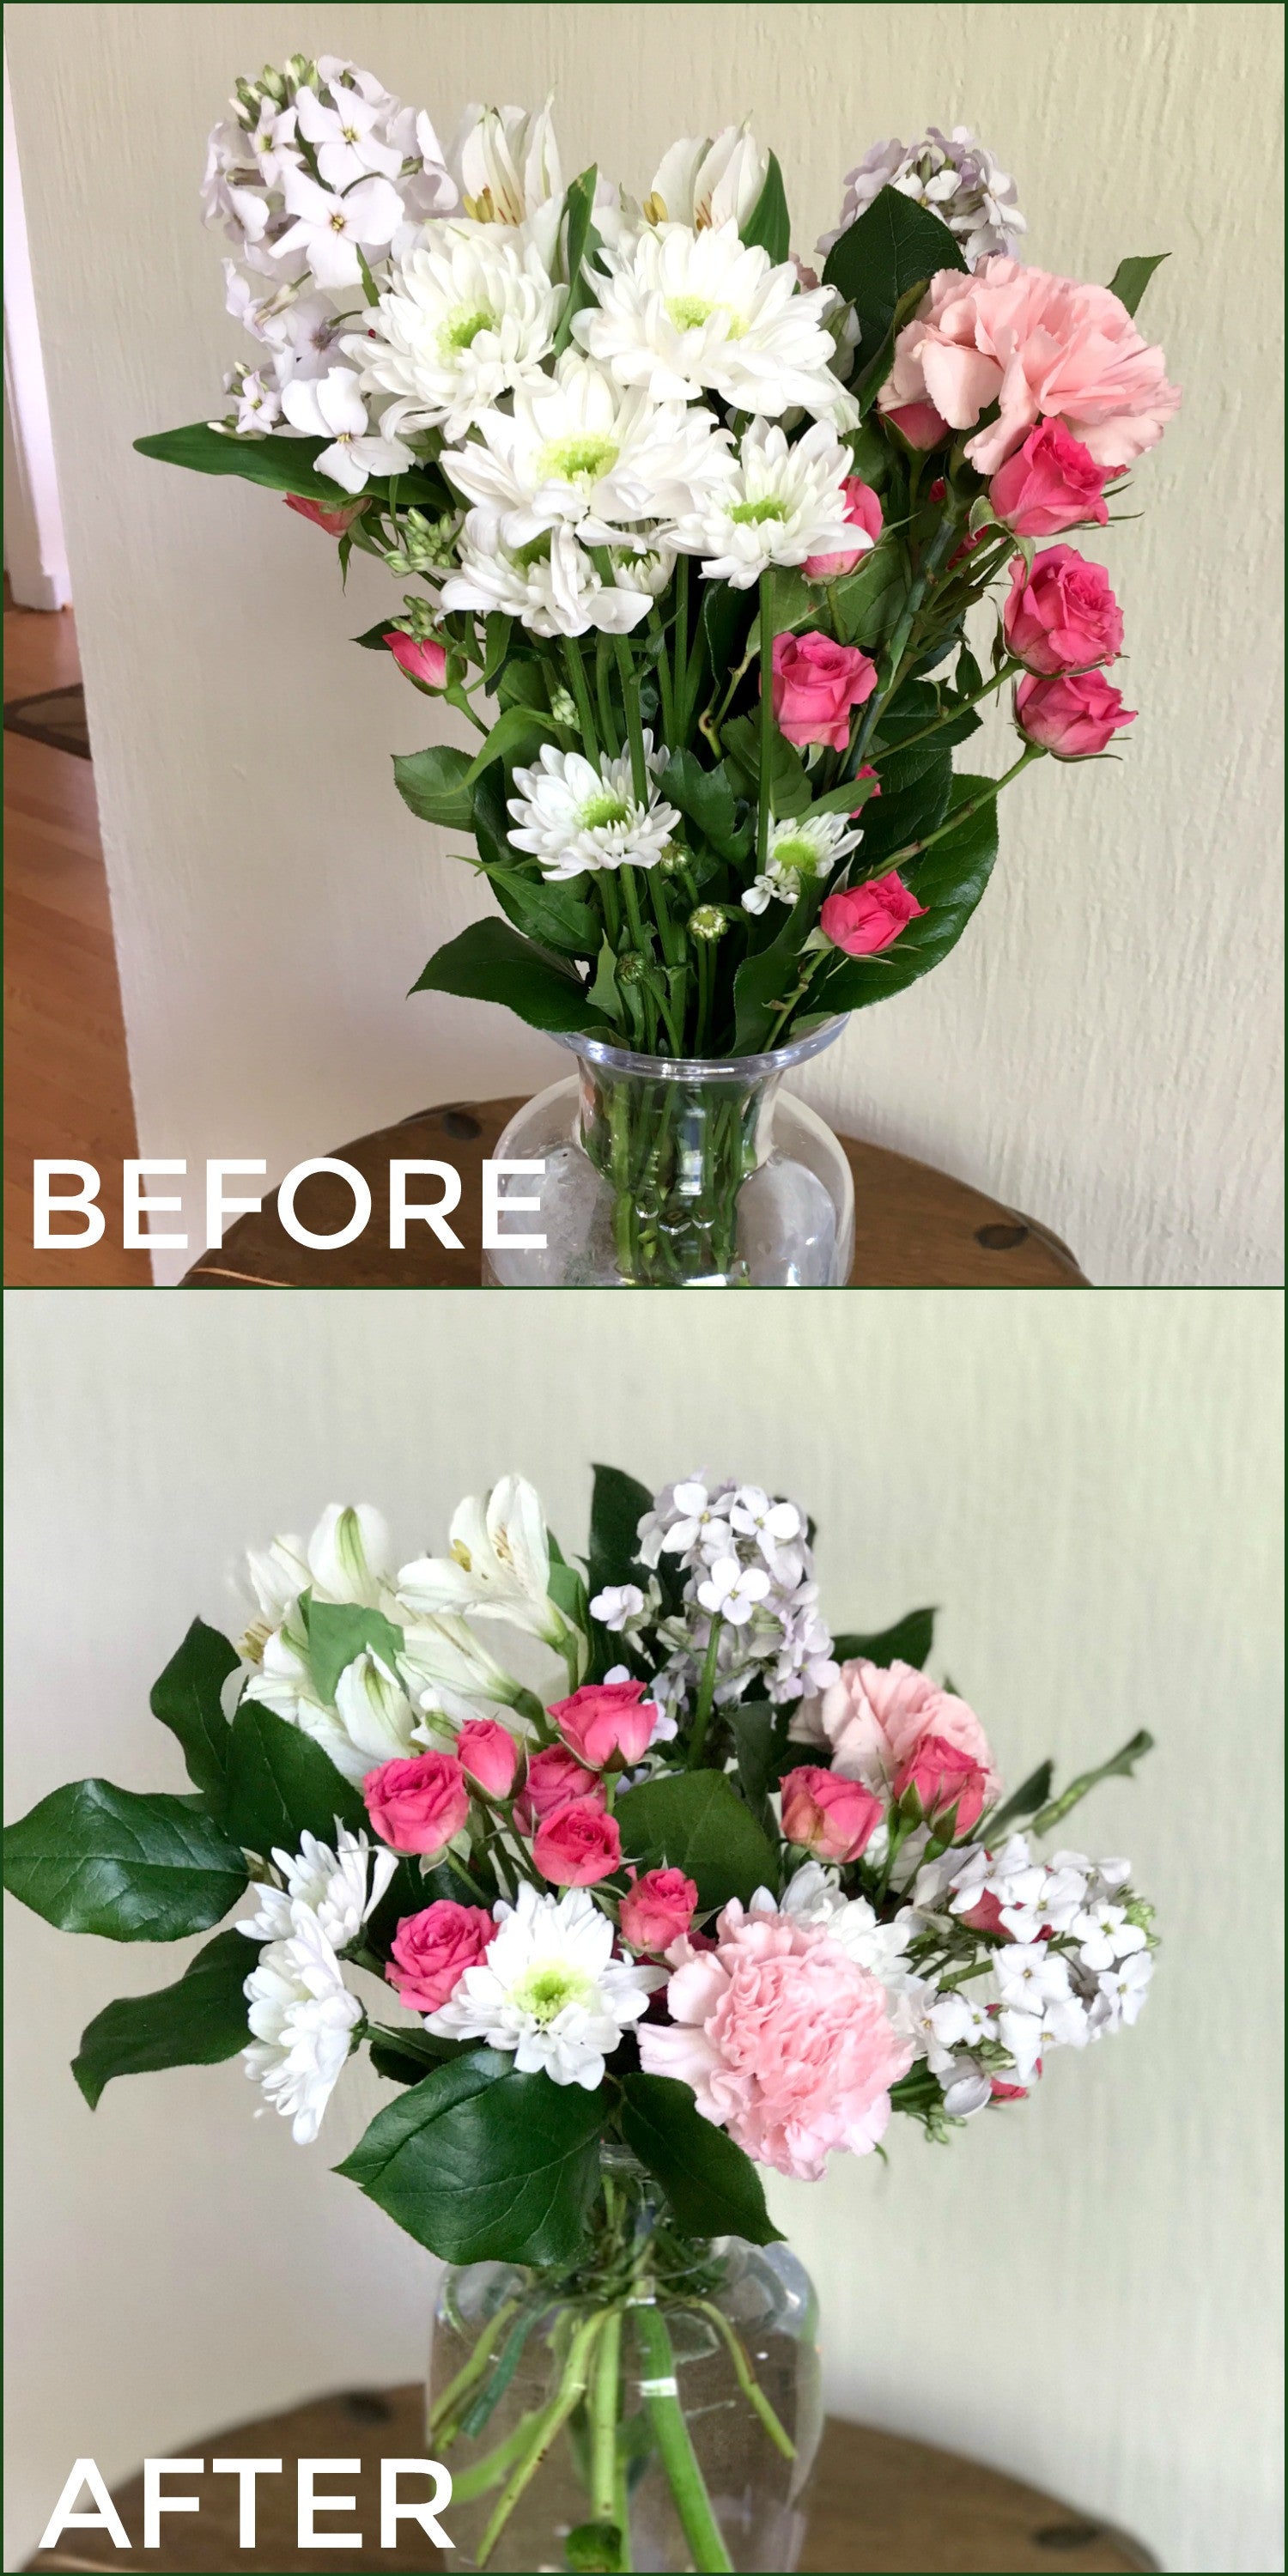 transform a grocery store bouquet into a floral shop arrangement